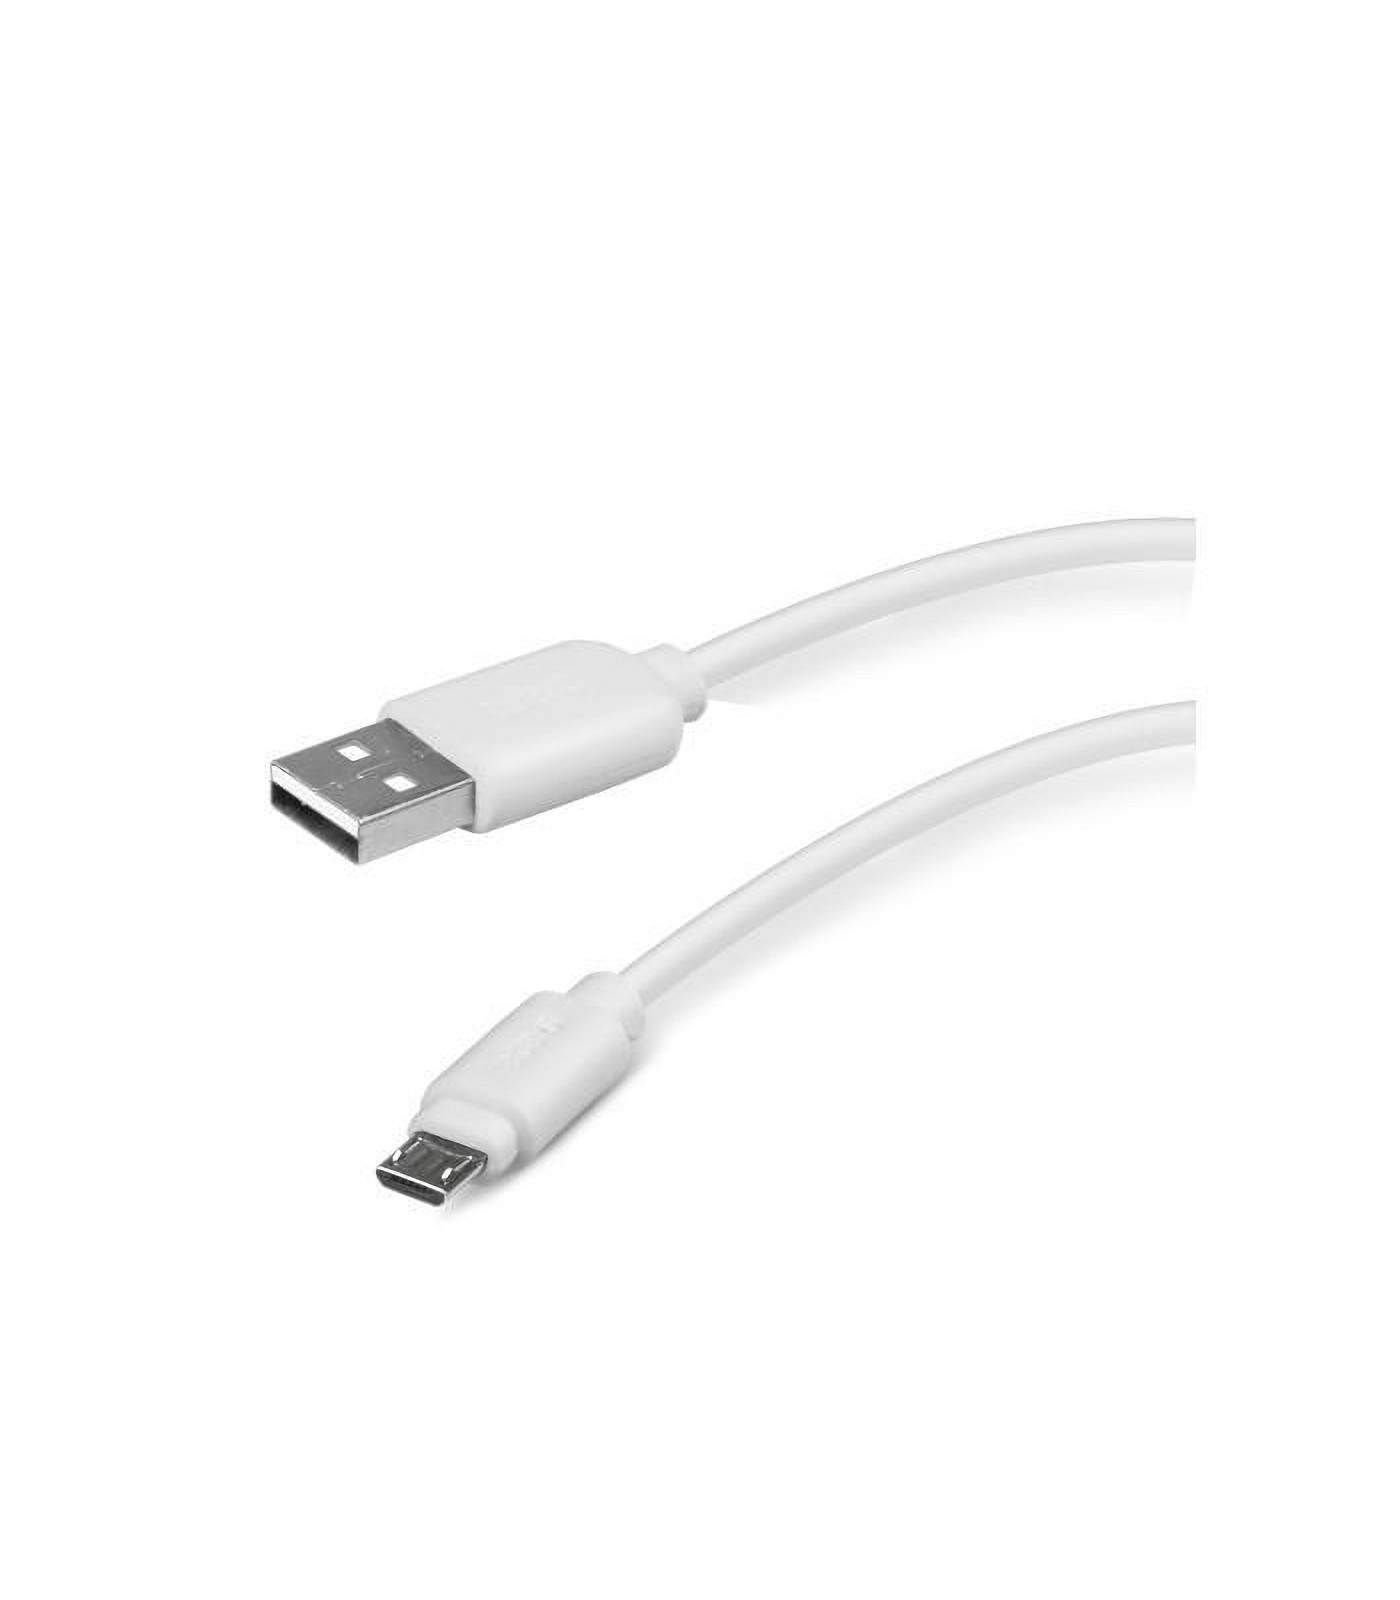 Poleasingowy biały kabel micro USB